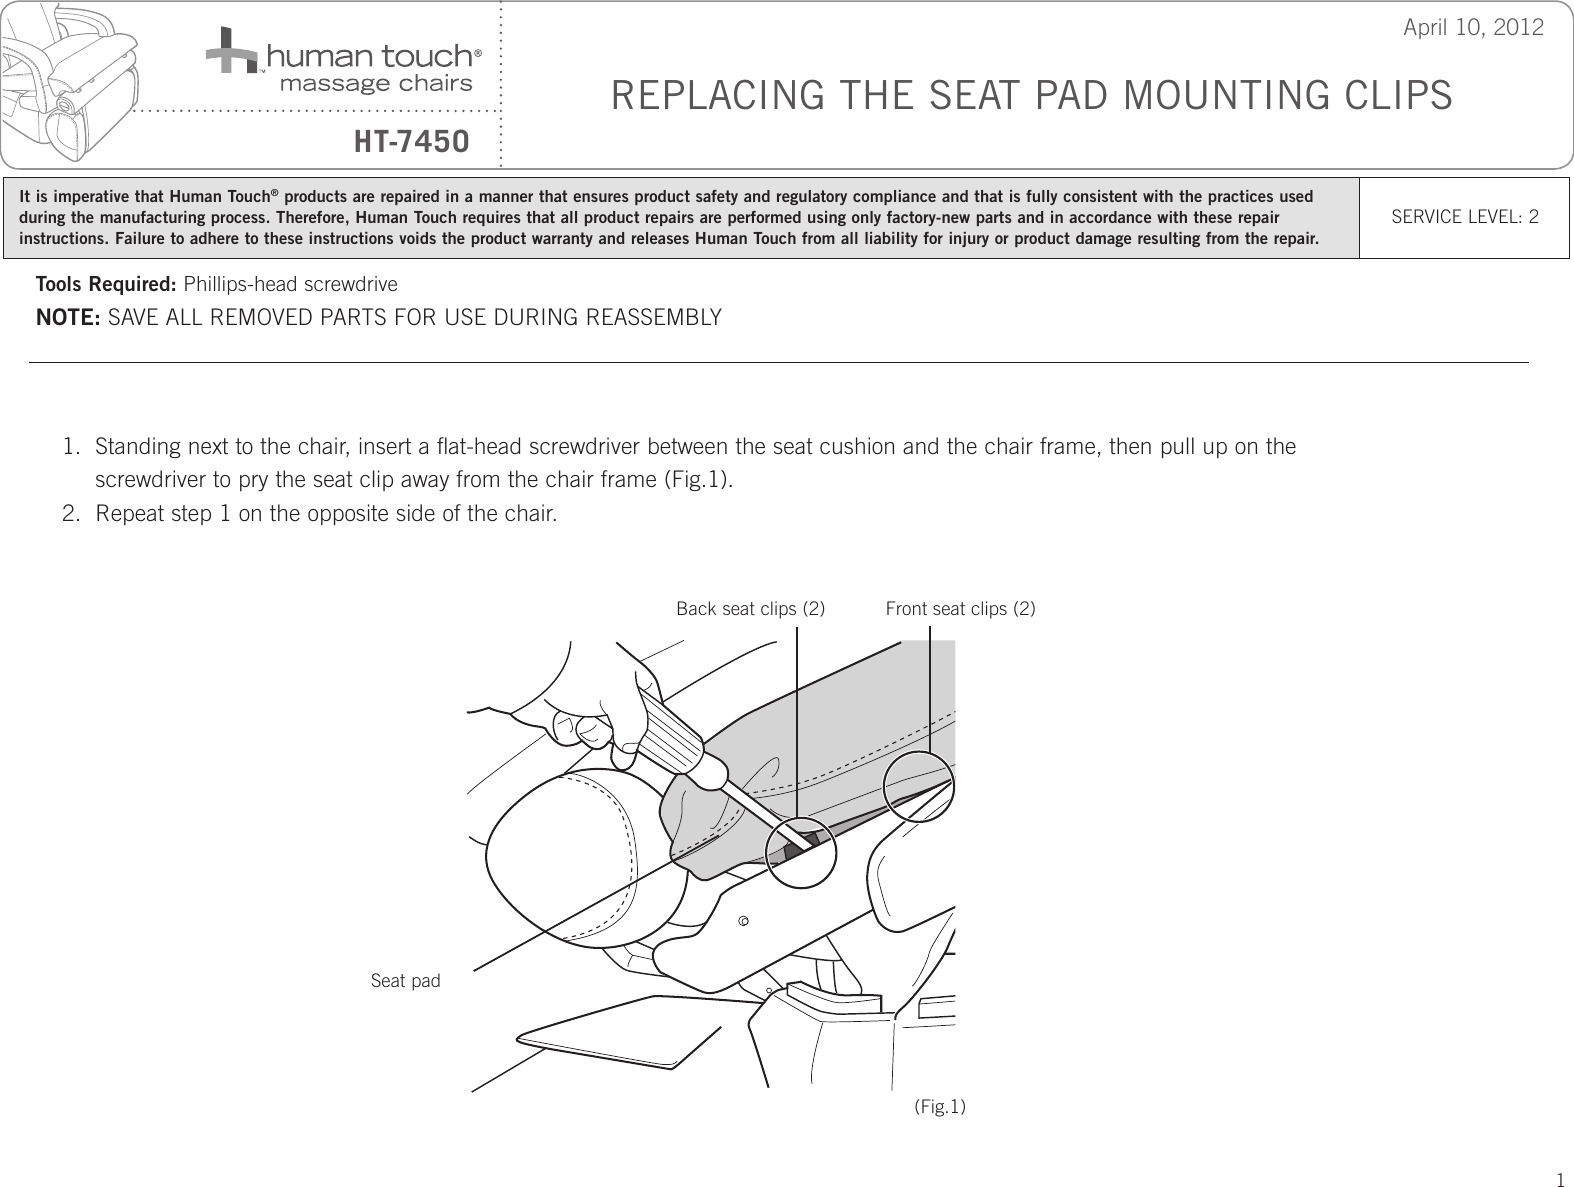 Page 1 of 2 - Human-Touch Human-Touch-Human-Touch-Wheelchair-Ht-7450-Users-Manual-  Human-touch-human-touch-wheelchair-ht-7450-users-manual